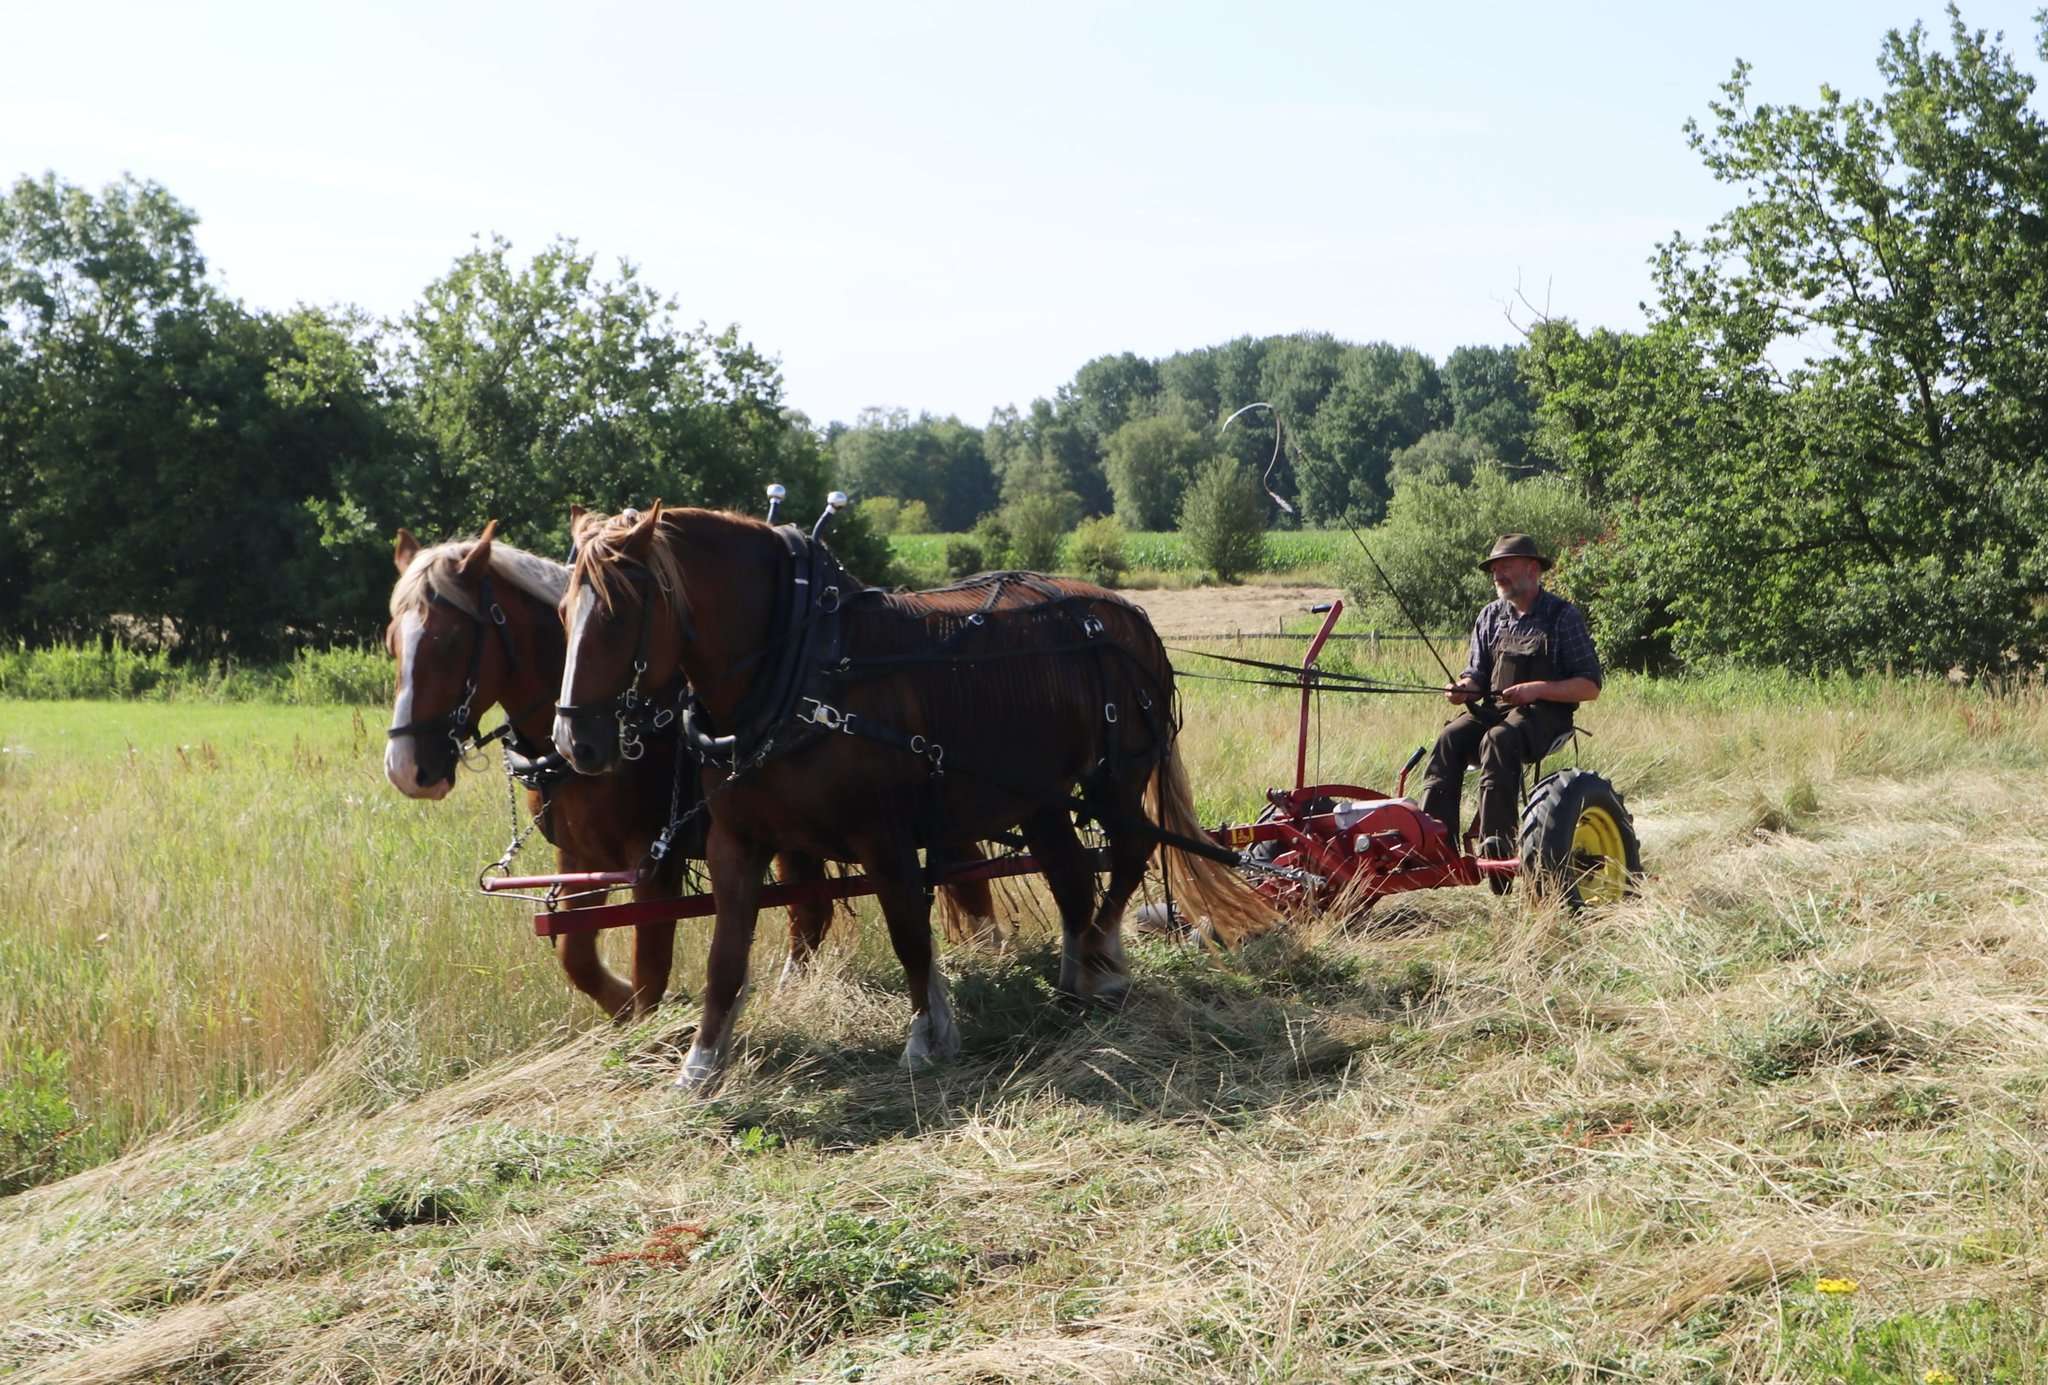 Peter Hagel mäht mit zwei Pferdestärken u2013 Anni und Beeke u2013 eine Wiese bei Lauenbrück. Foto: Baucke